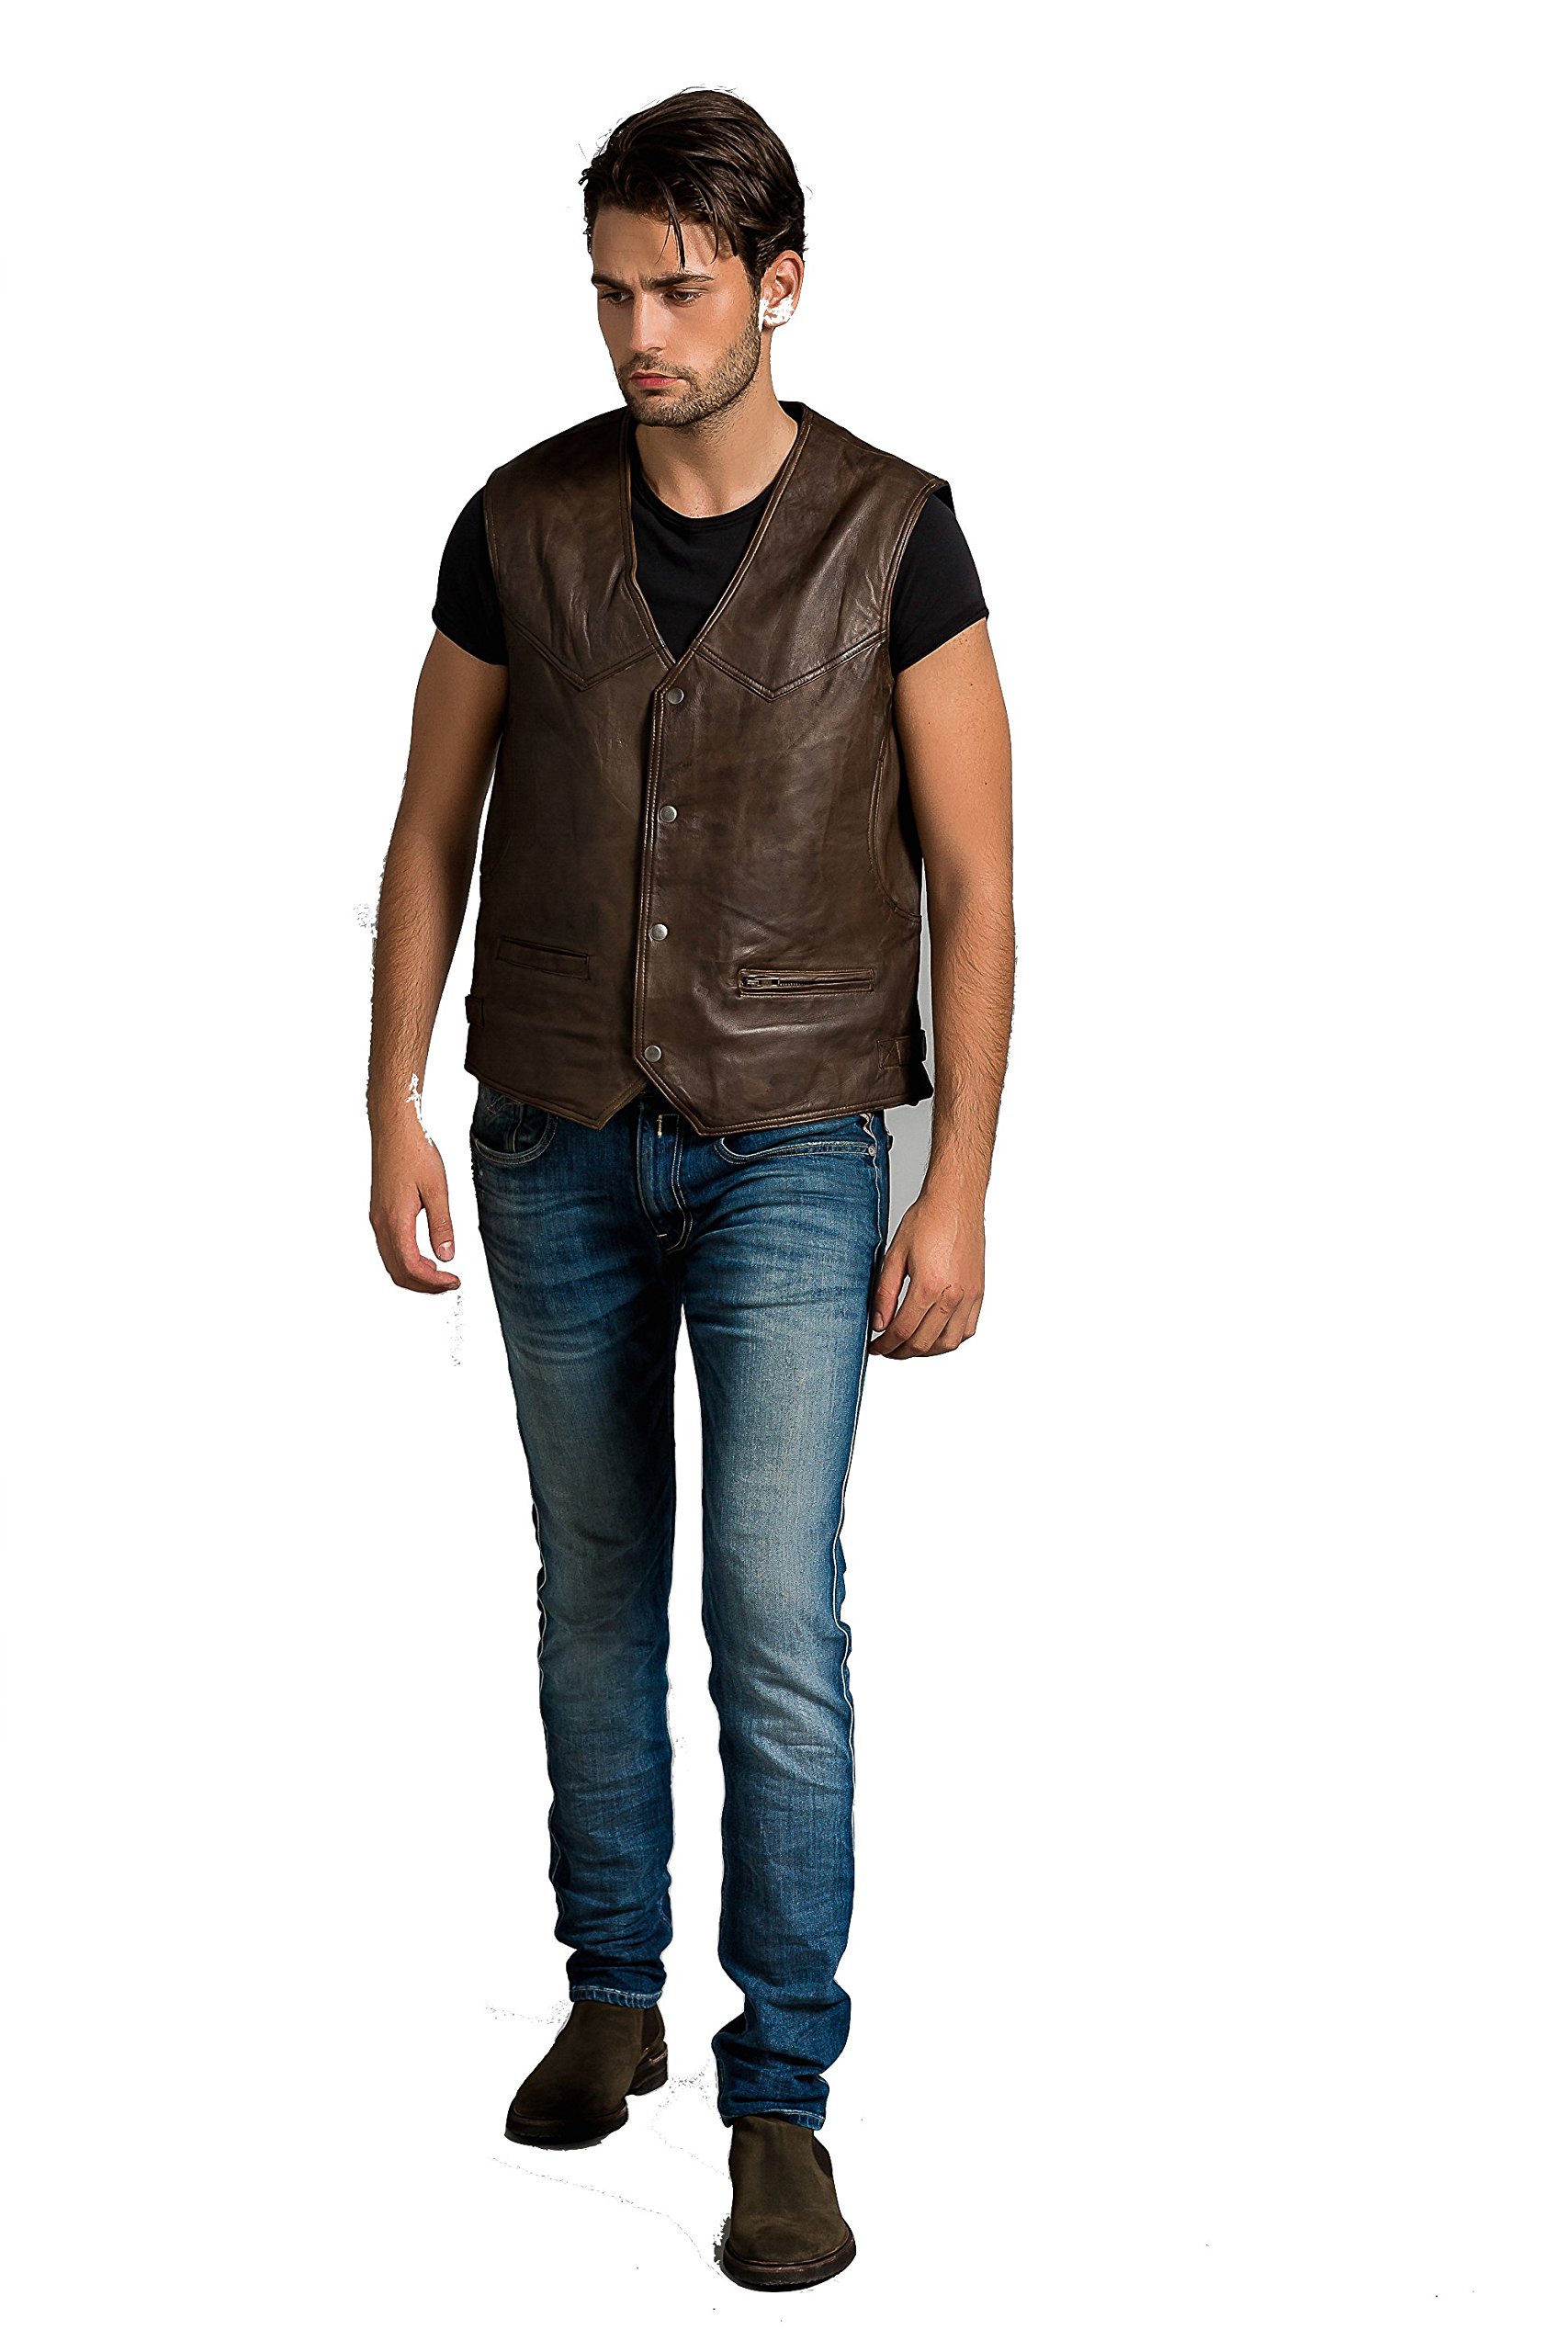 Billy Waistcoat, Ontorio Brown, Size 5XL von Urban Leather